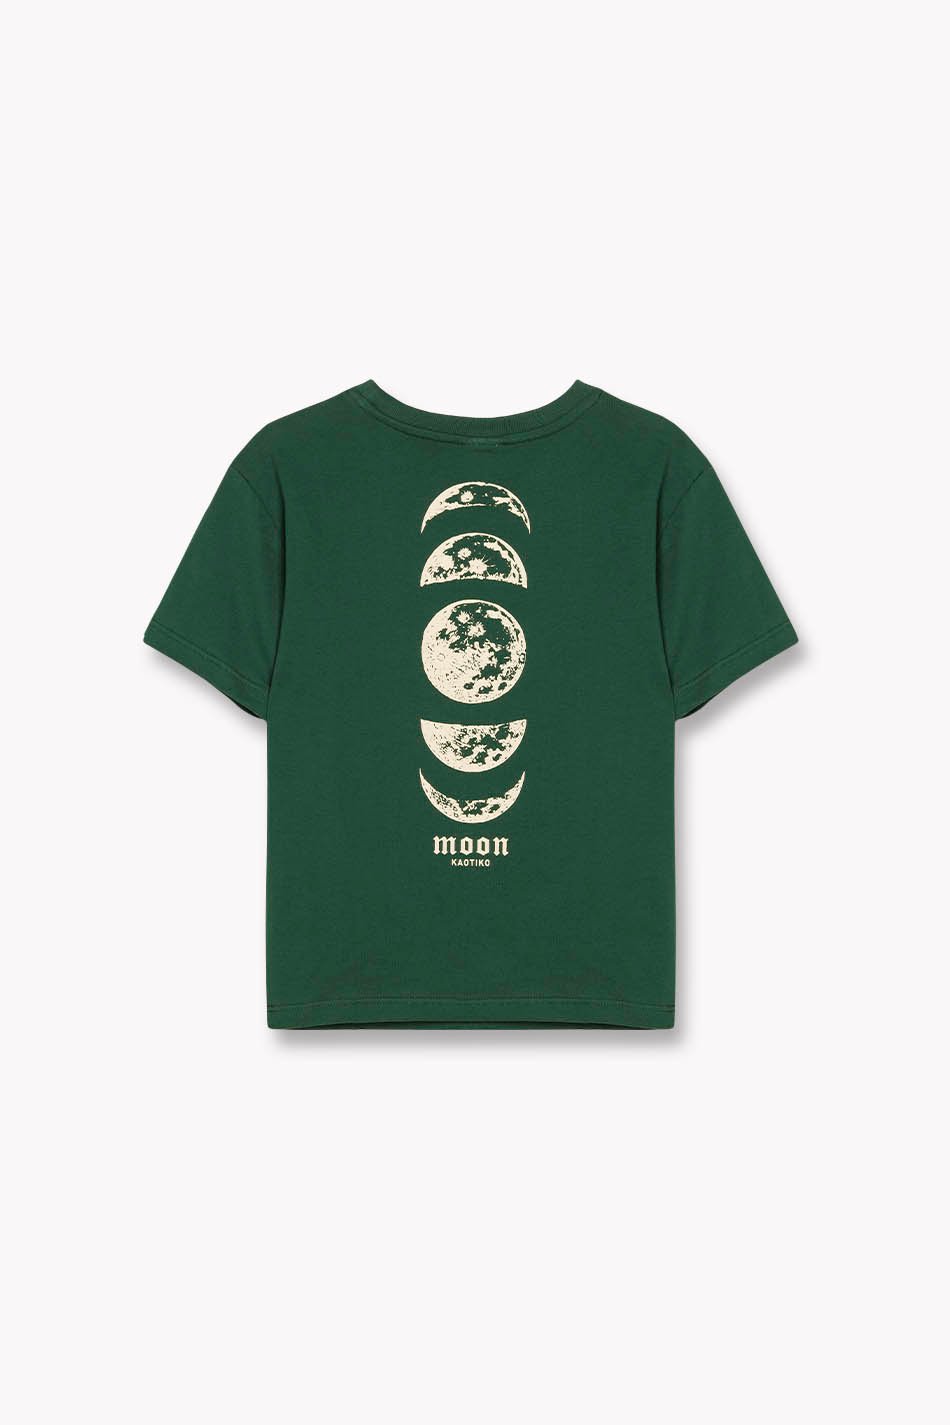 Camiseta Moon Verde